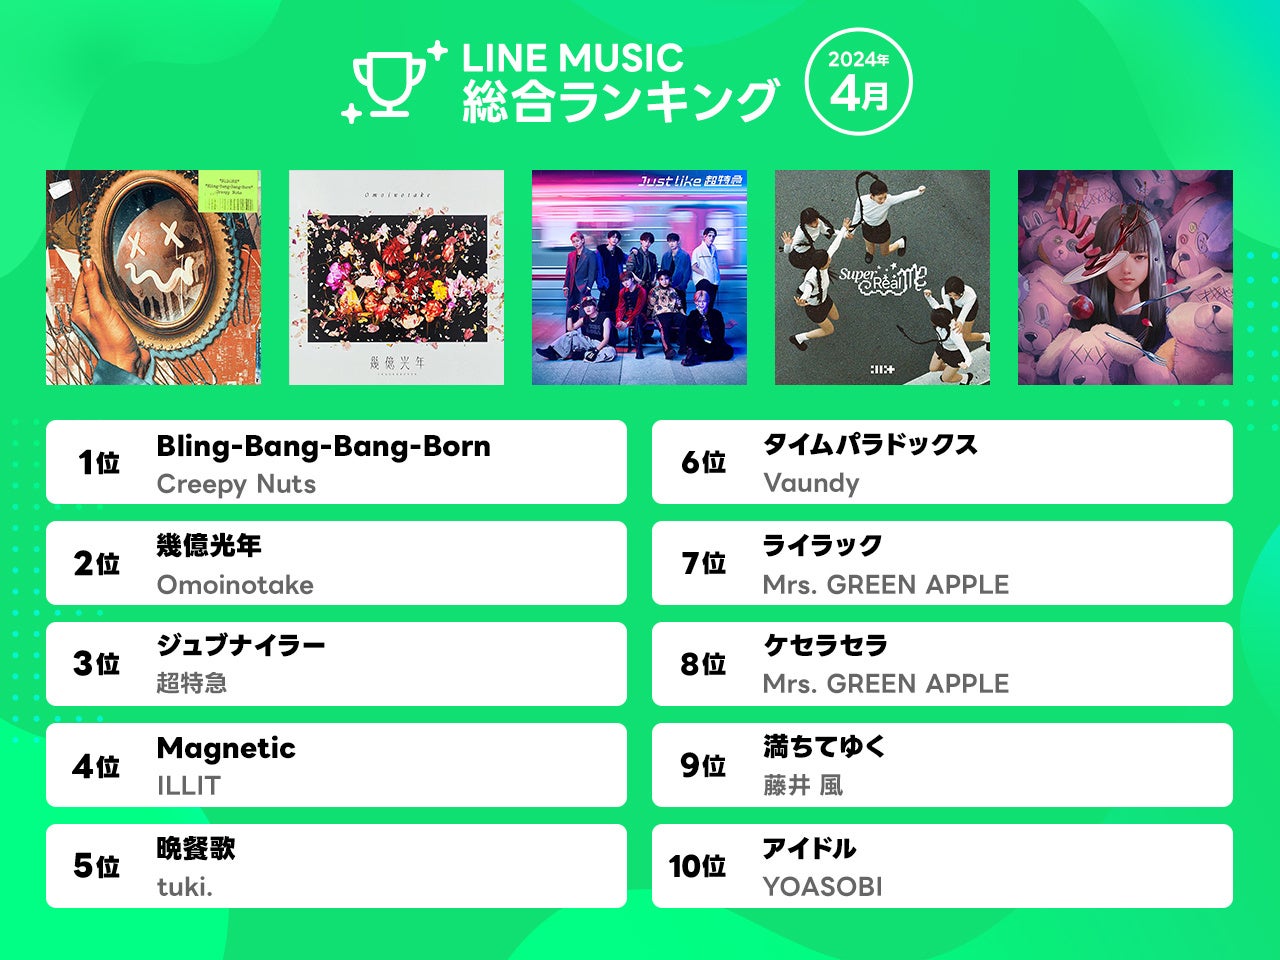 【LINE MUSIC 2024年4月月間ランキング】Creepy Nutsの勢い止まらず、「Bling-Bang-Bang-Born」が3か月連続で1位に